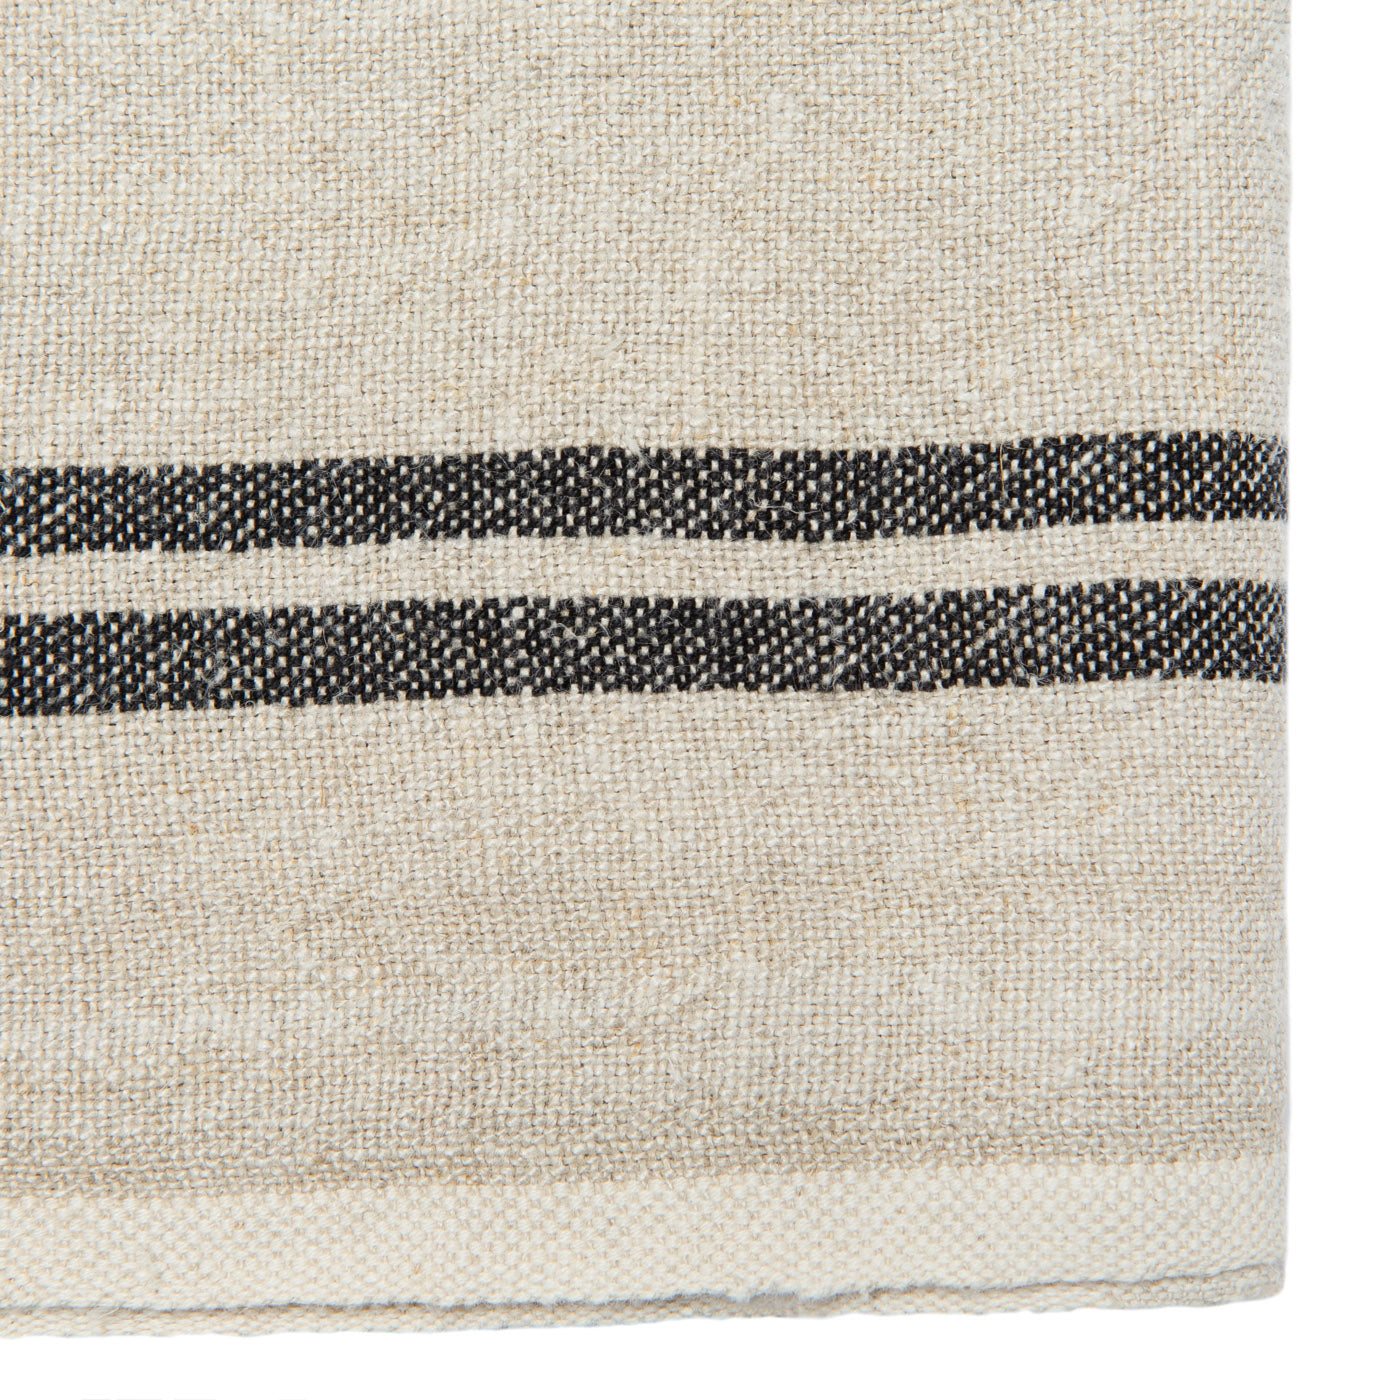 Vintage Linen Kitchen Towels Natural & Black, Set of 2